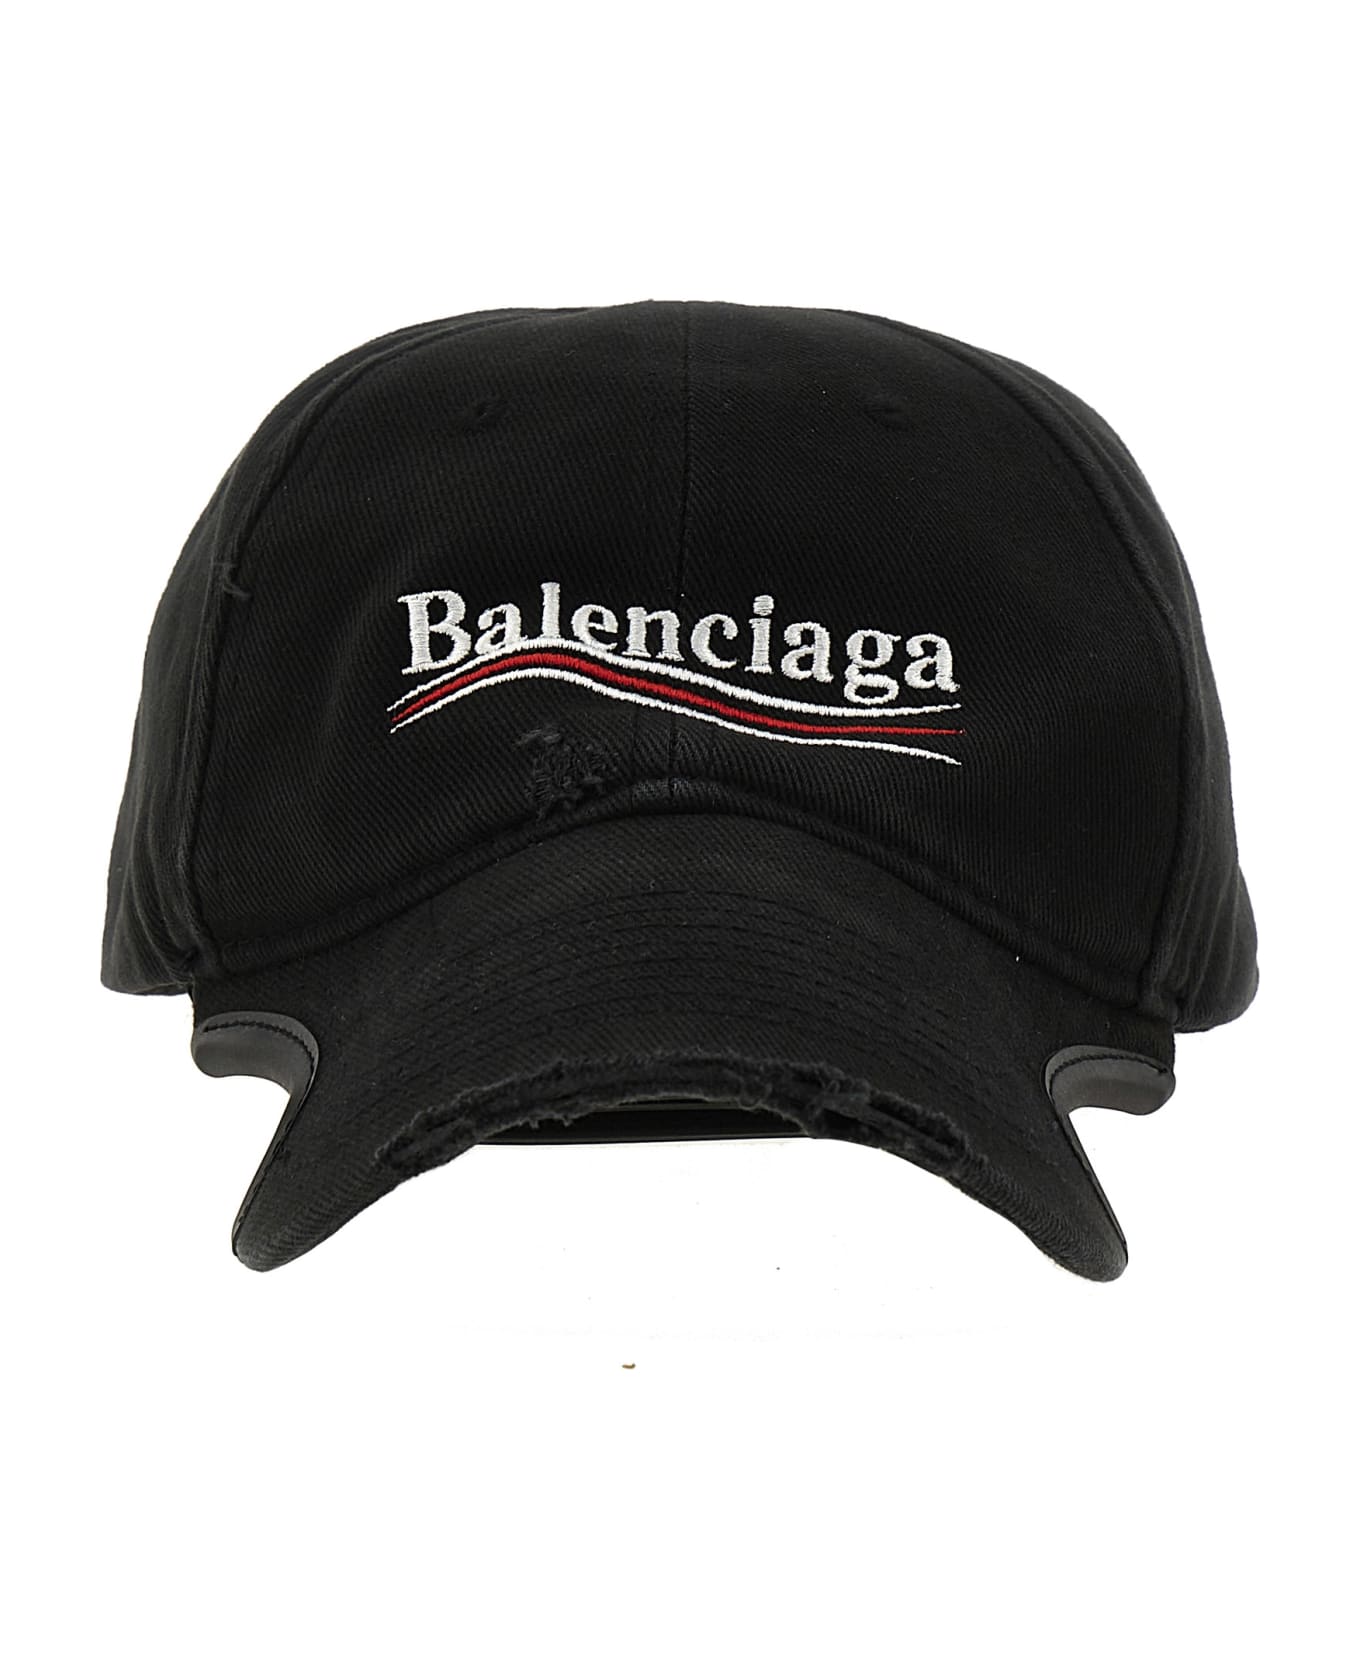 Balenciaga Political Campaign Cap - Black